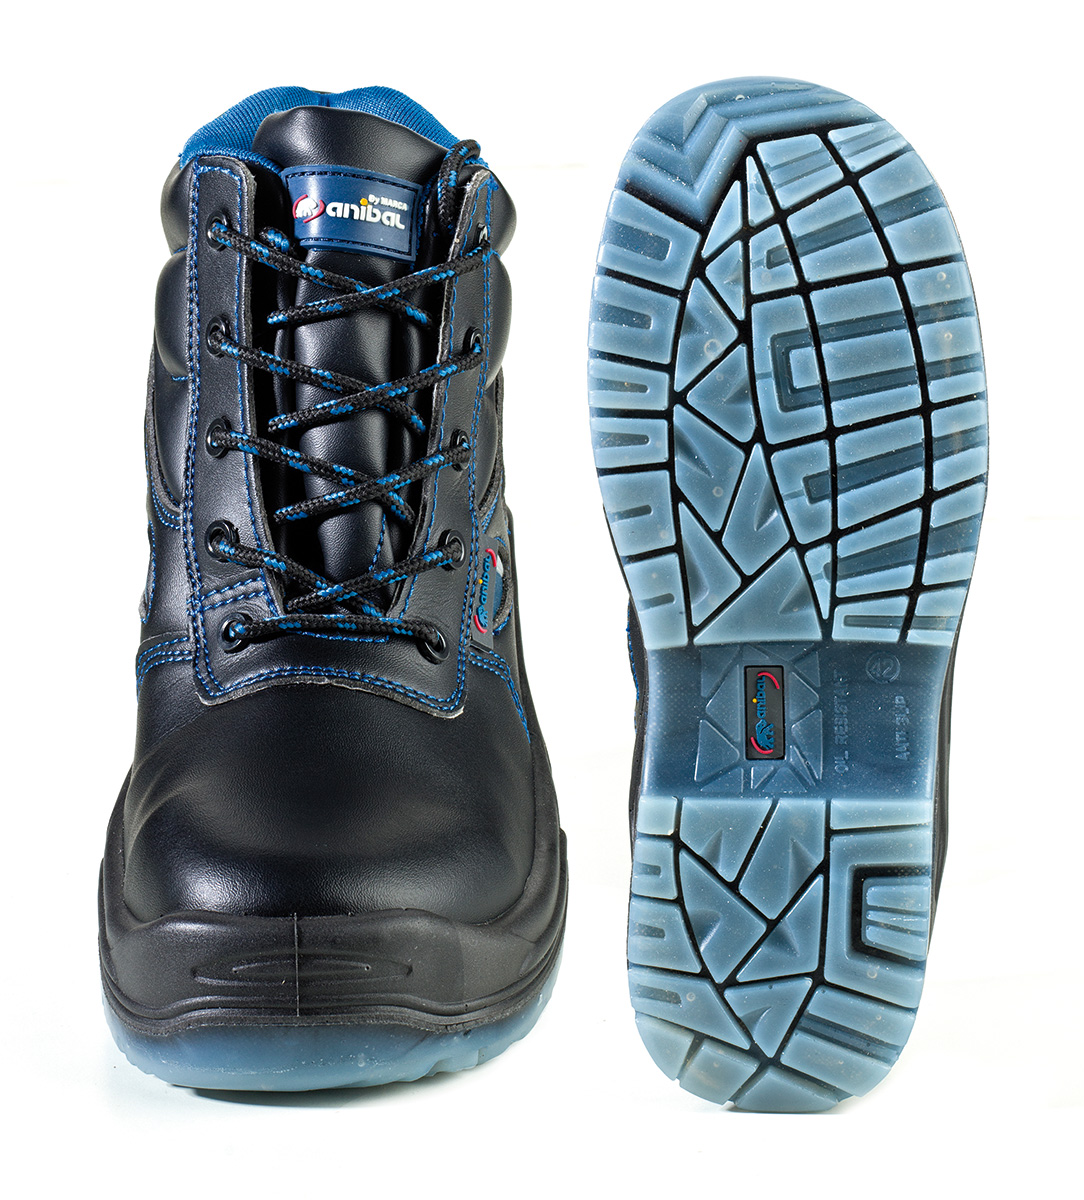 1688-BAC Chaussures de securite Confort Mod. “LEÓNIDAS”
Botte microfibre noire S3 “Metal Free” extra-large avec semelle Polyuréthane double densité.